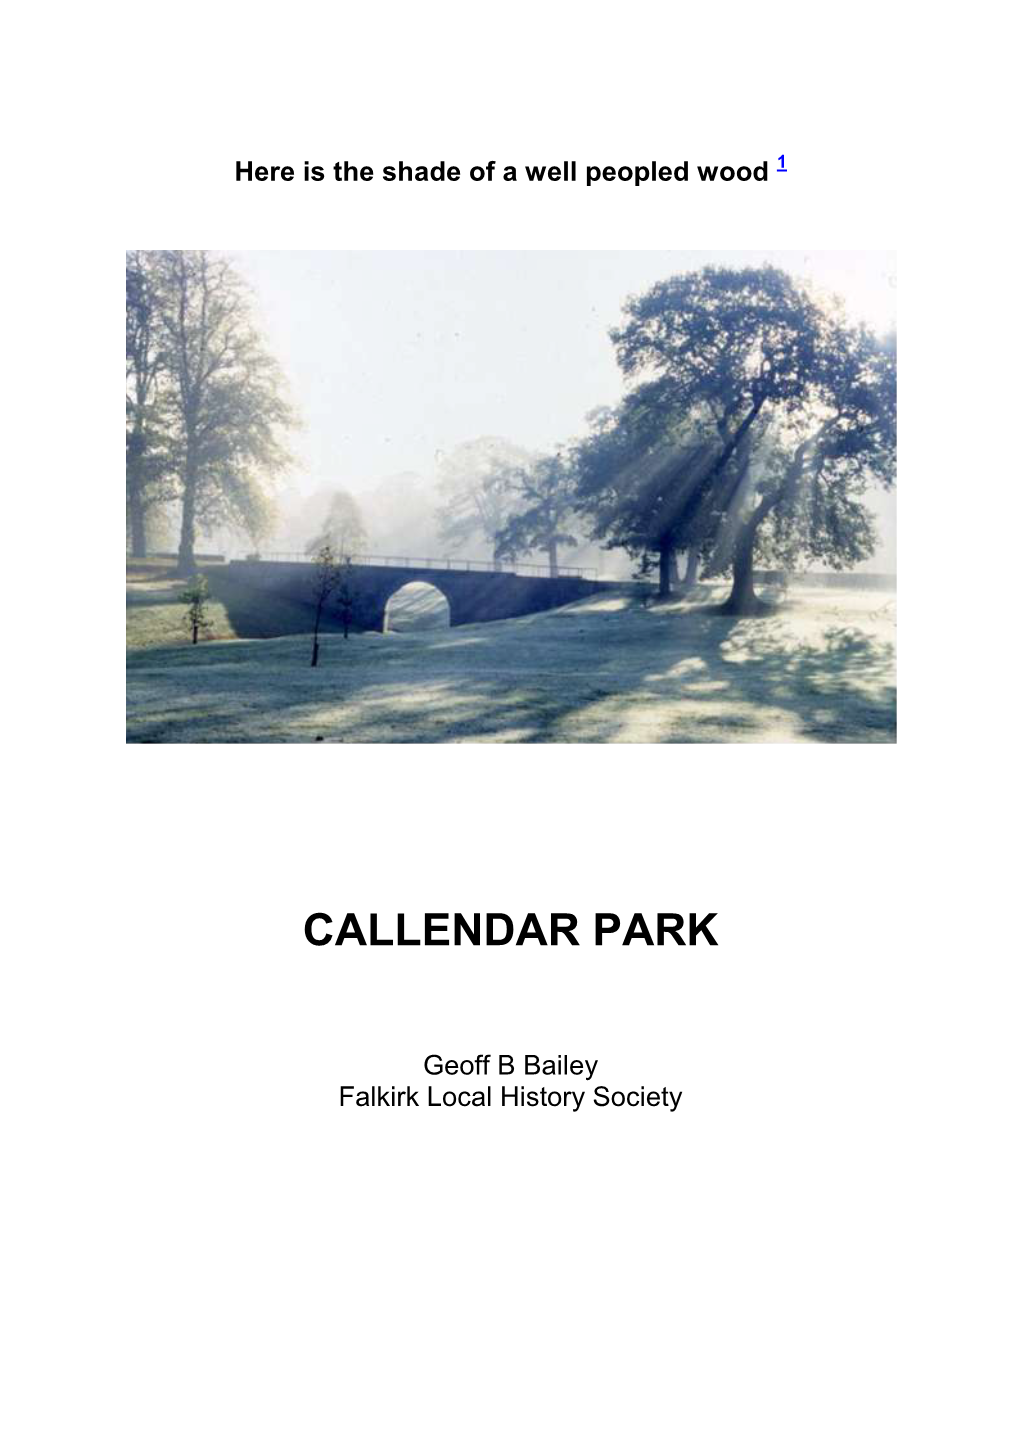 Callendar Park